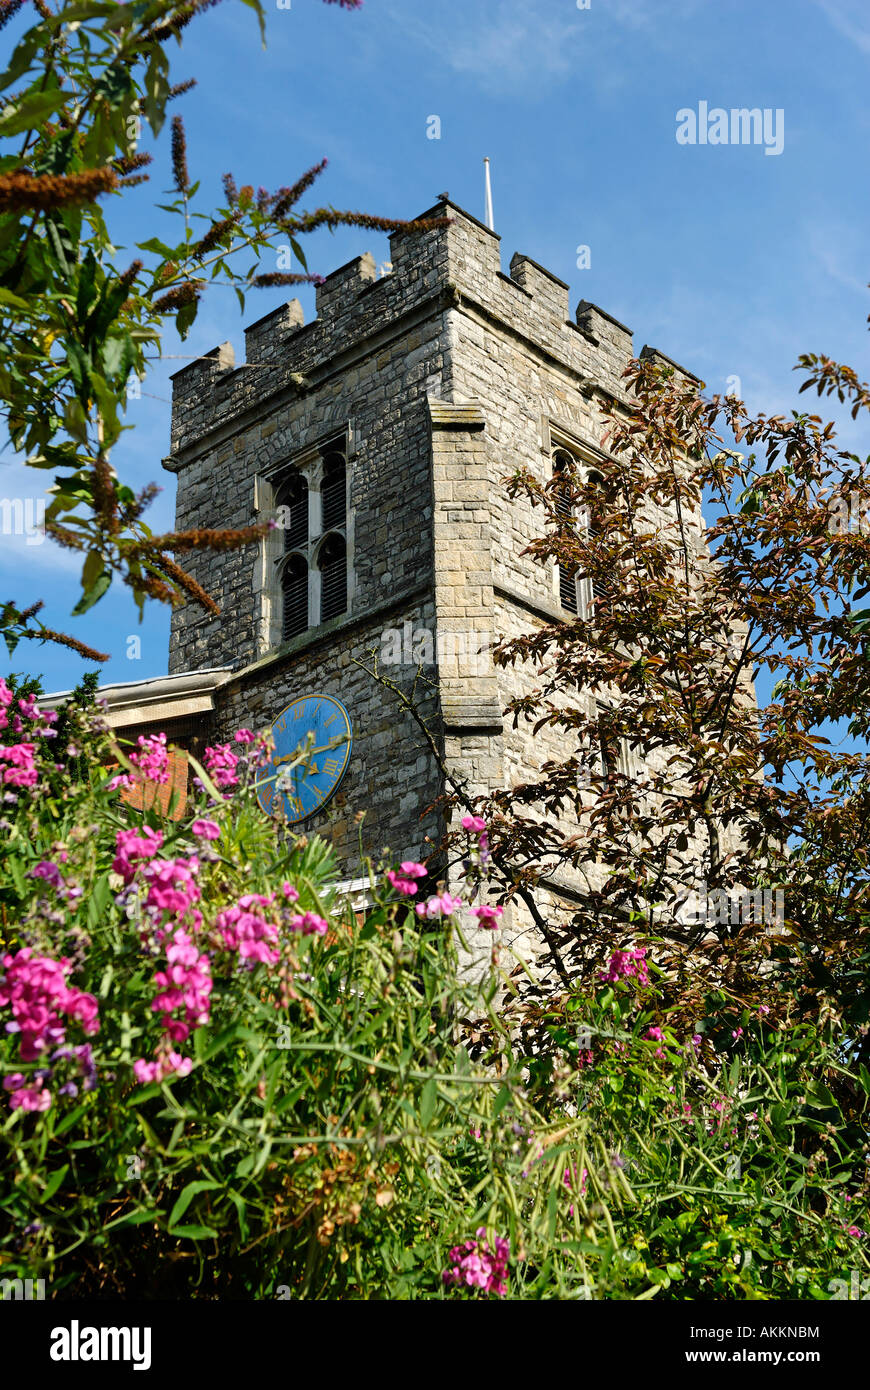 The clock tower of St Mary's Parish hurch, Twickenham Stock Photo